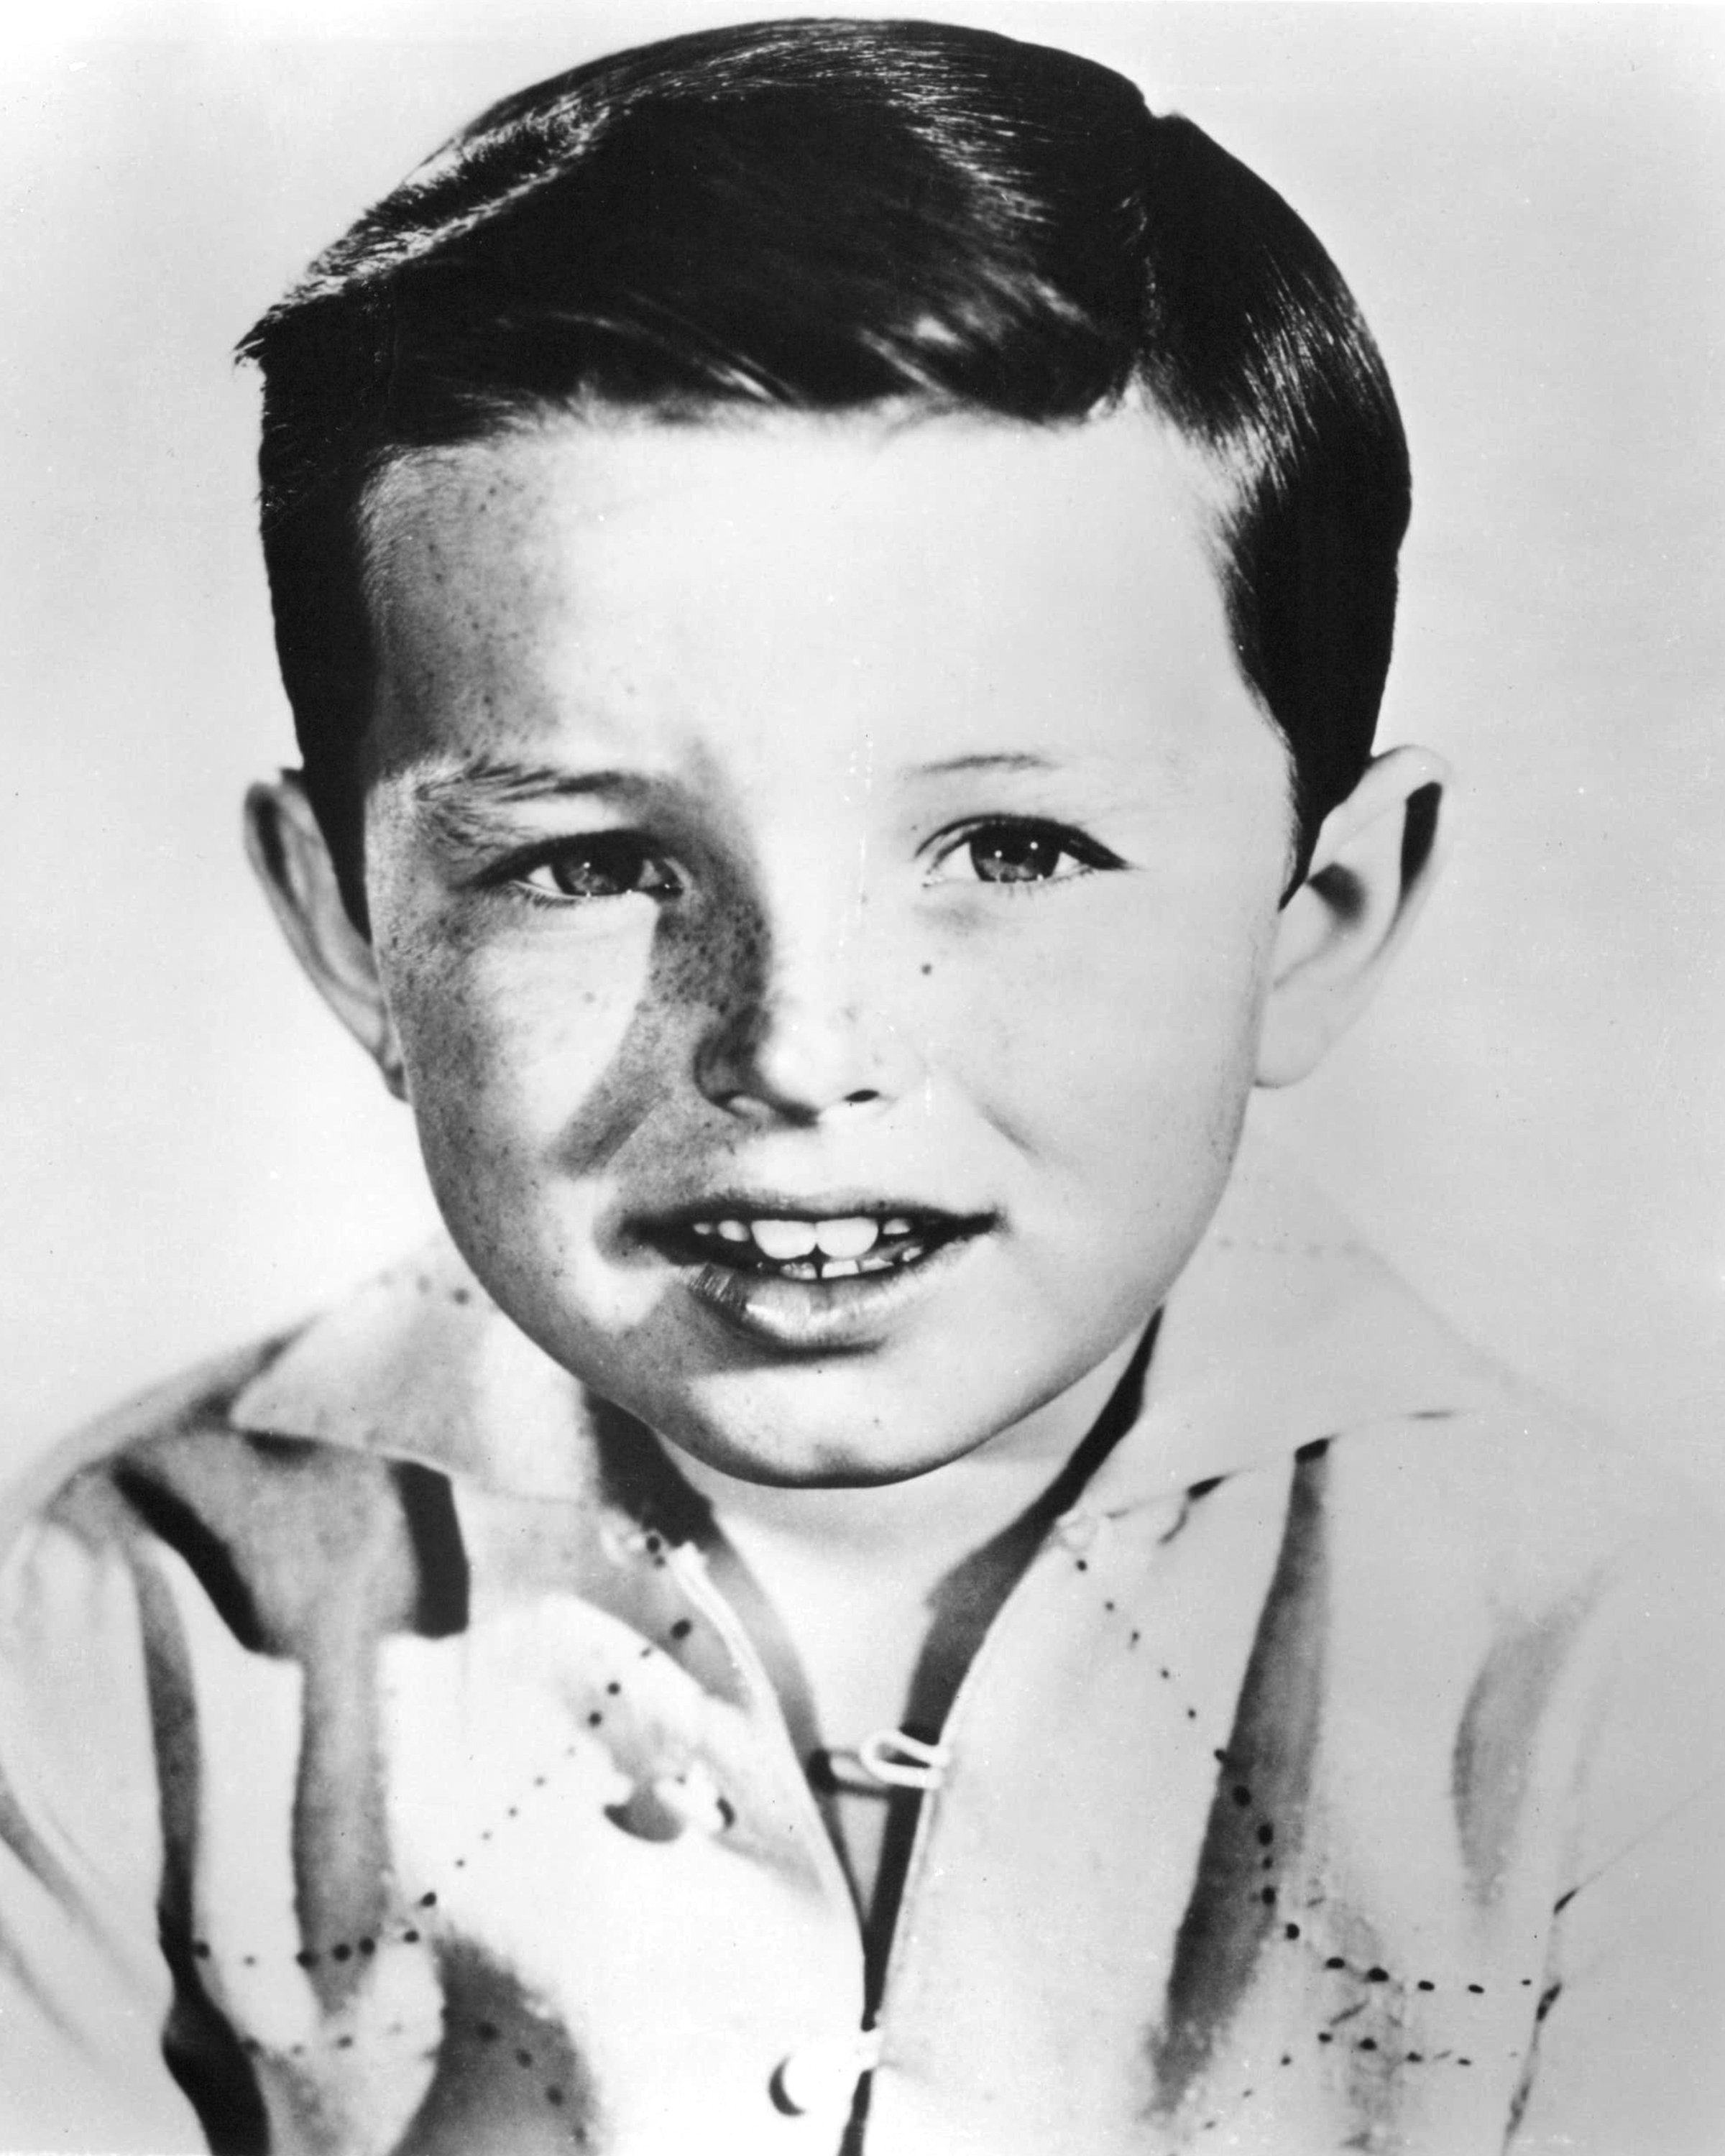 A headshot of Jerry Mathers circa 1957